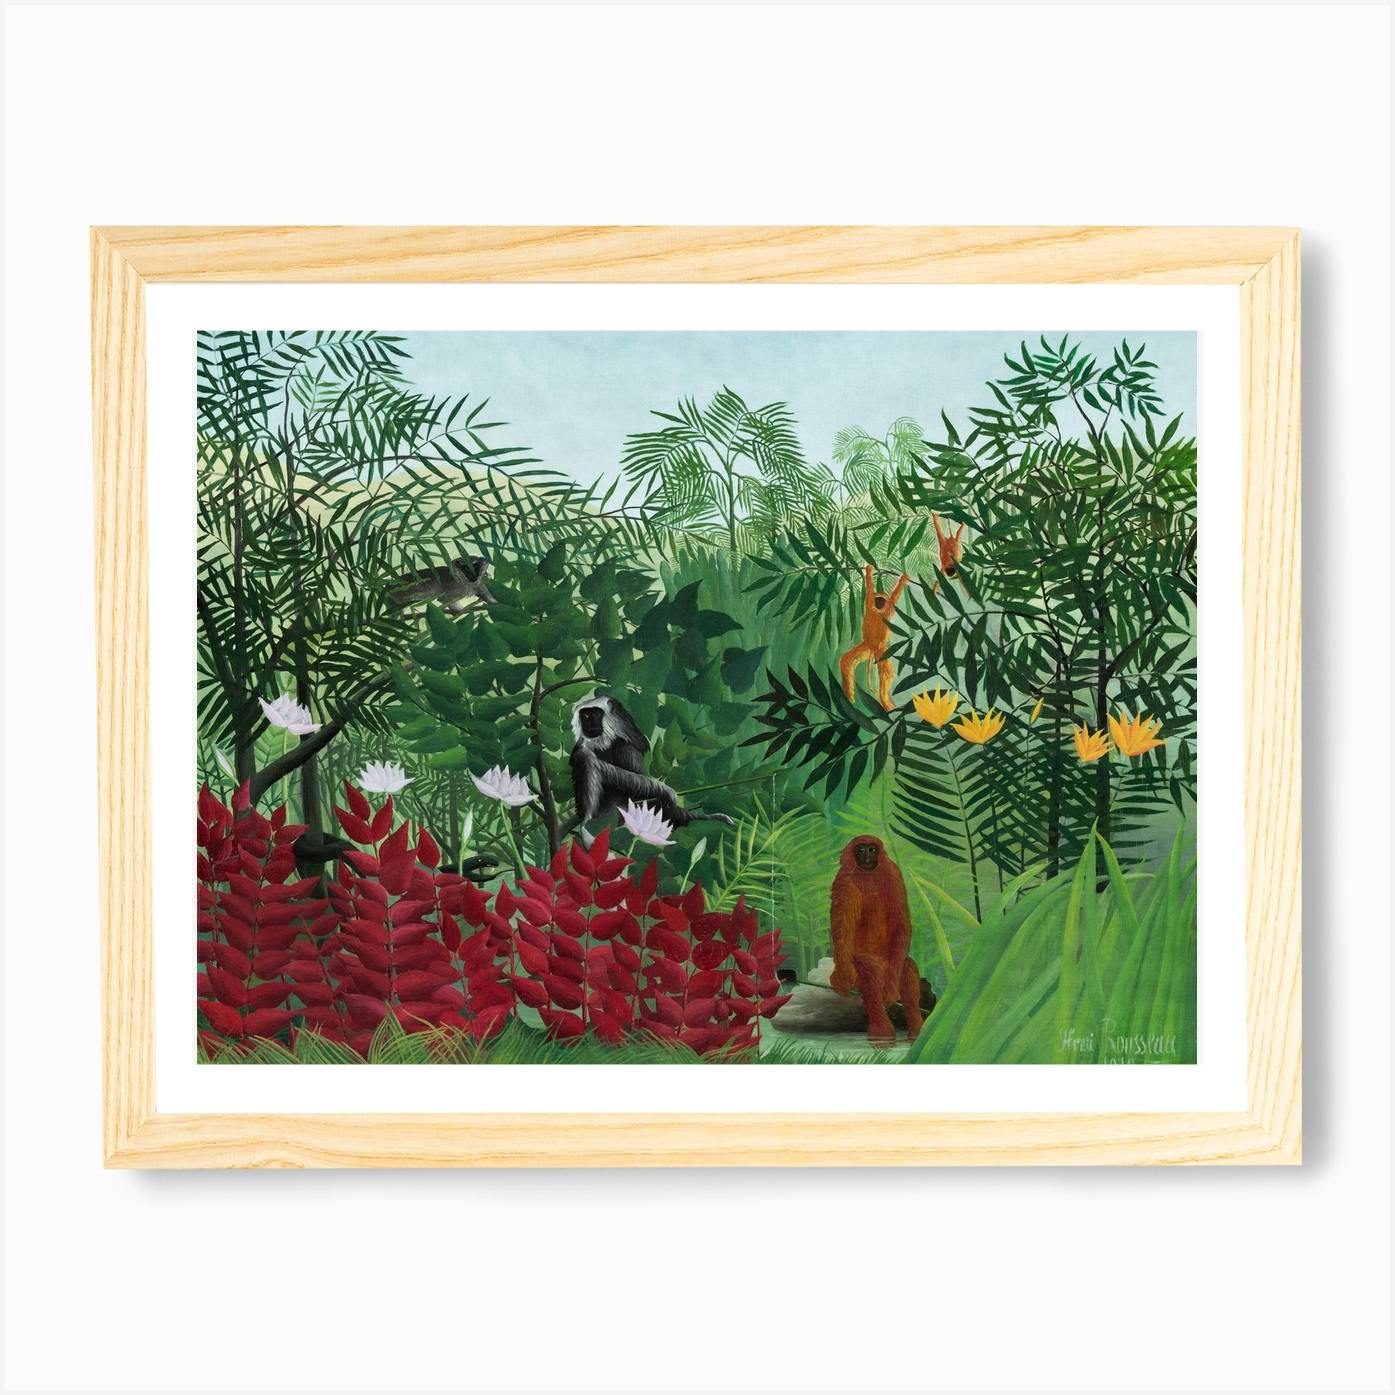 Rare fine unique jungle landscape painting signed Henri Rousseau w COA   eBay